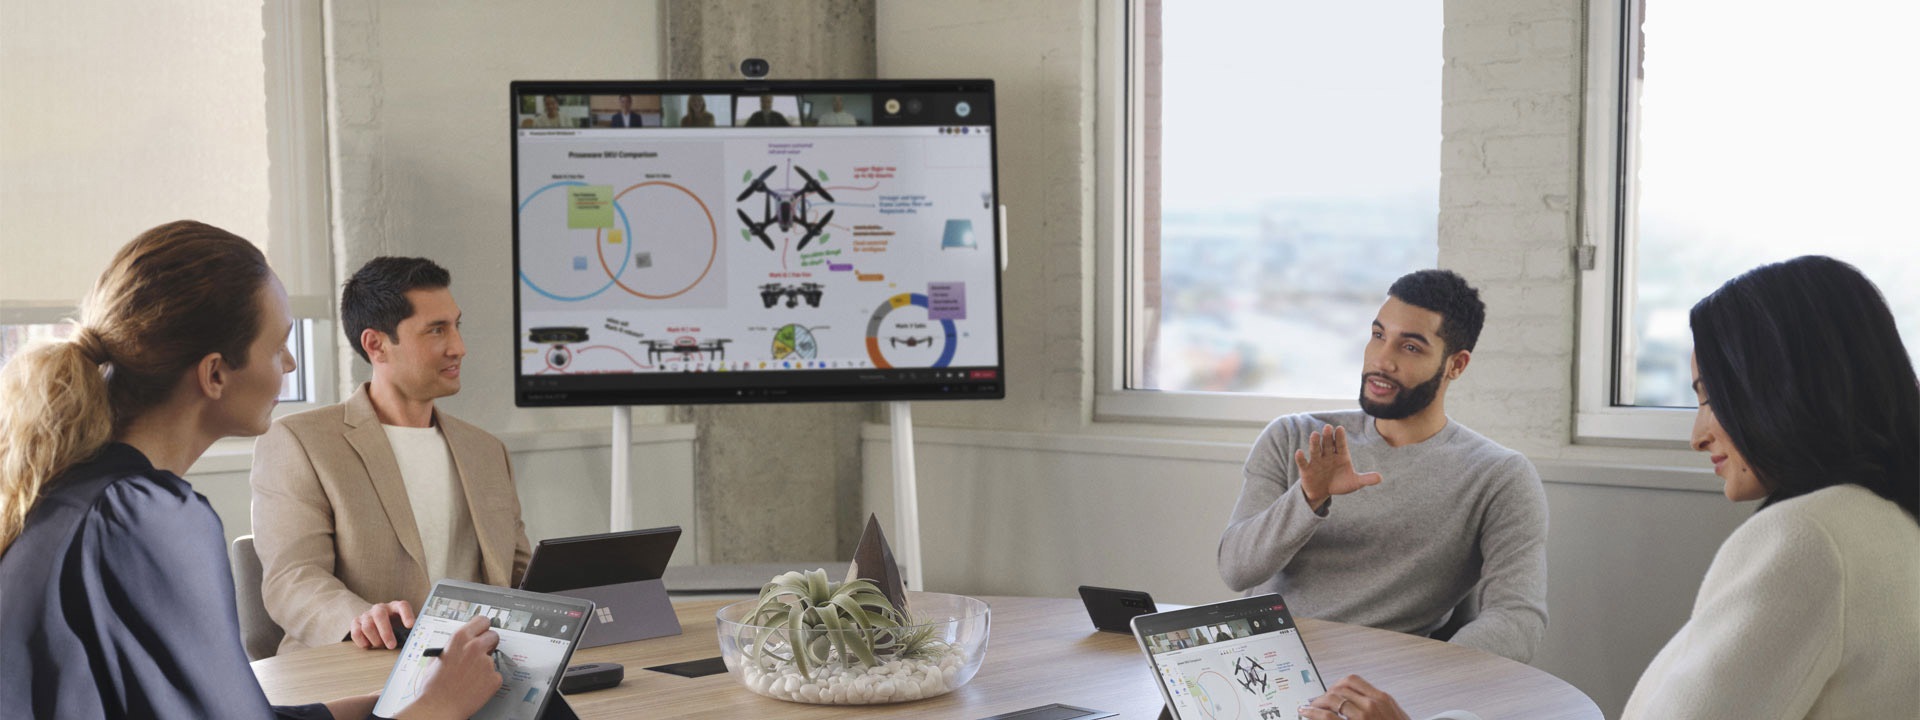 Neljä työtoveria neuvotteluhuoneessa pitämässä Microsoft Teams -kokousta erilaisten Surface-laitteiden kanssa